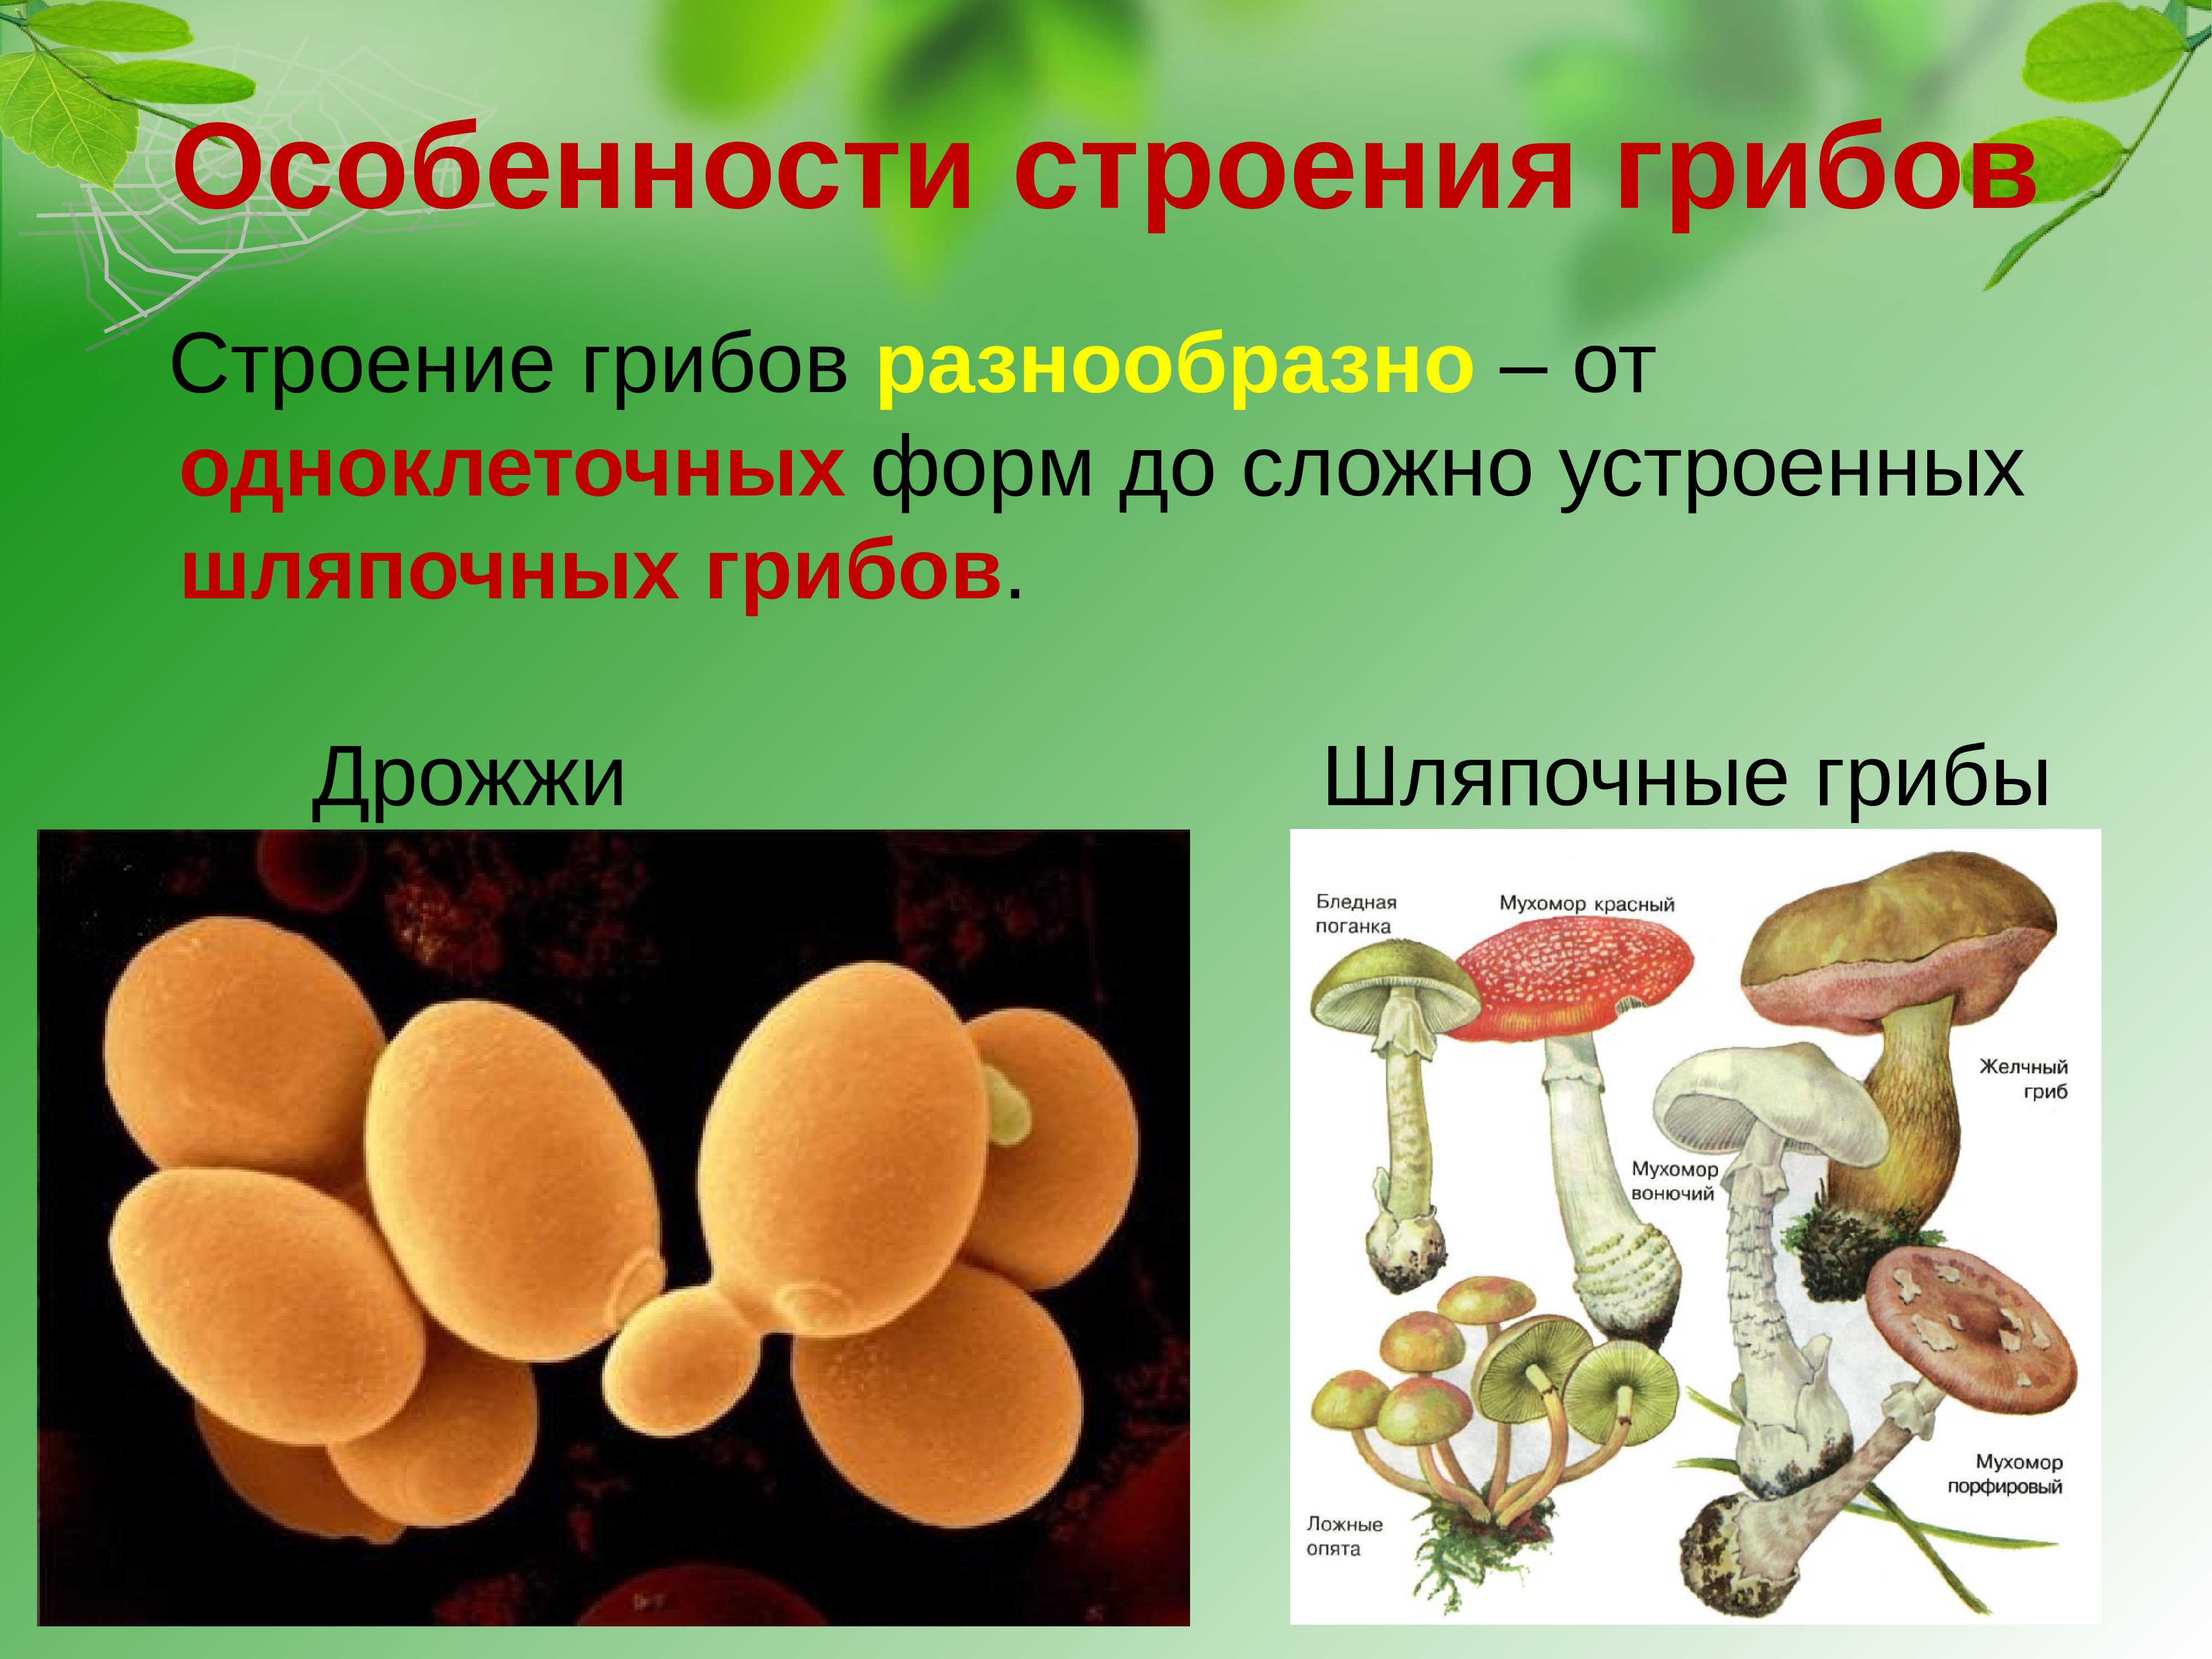 В каких биотехнологиях используют одноклеточные грибы. Строение одноклеточных грибов дрожжи. Строение грибов грибов. Грибы строение шляпочных грибов. Царство грибов одноклеточные (дрожжи).